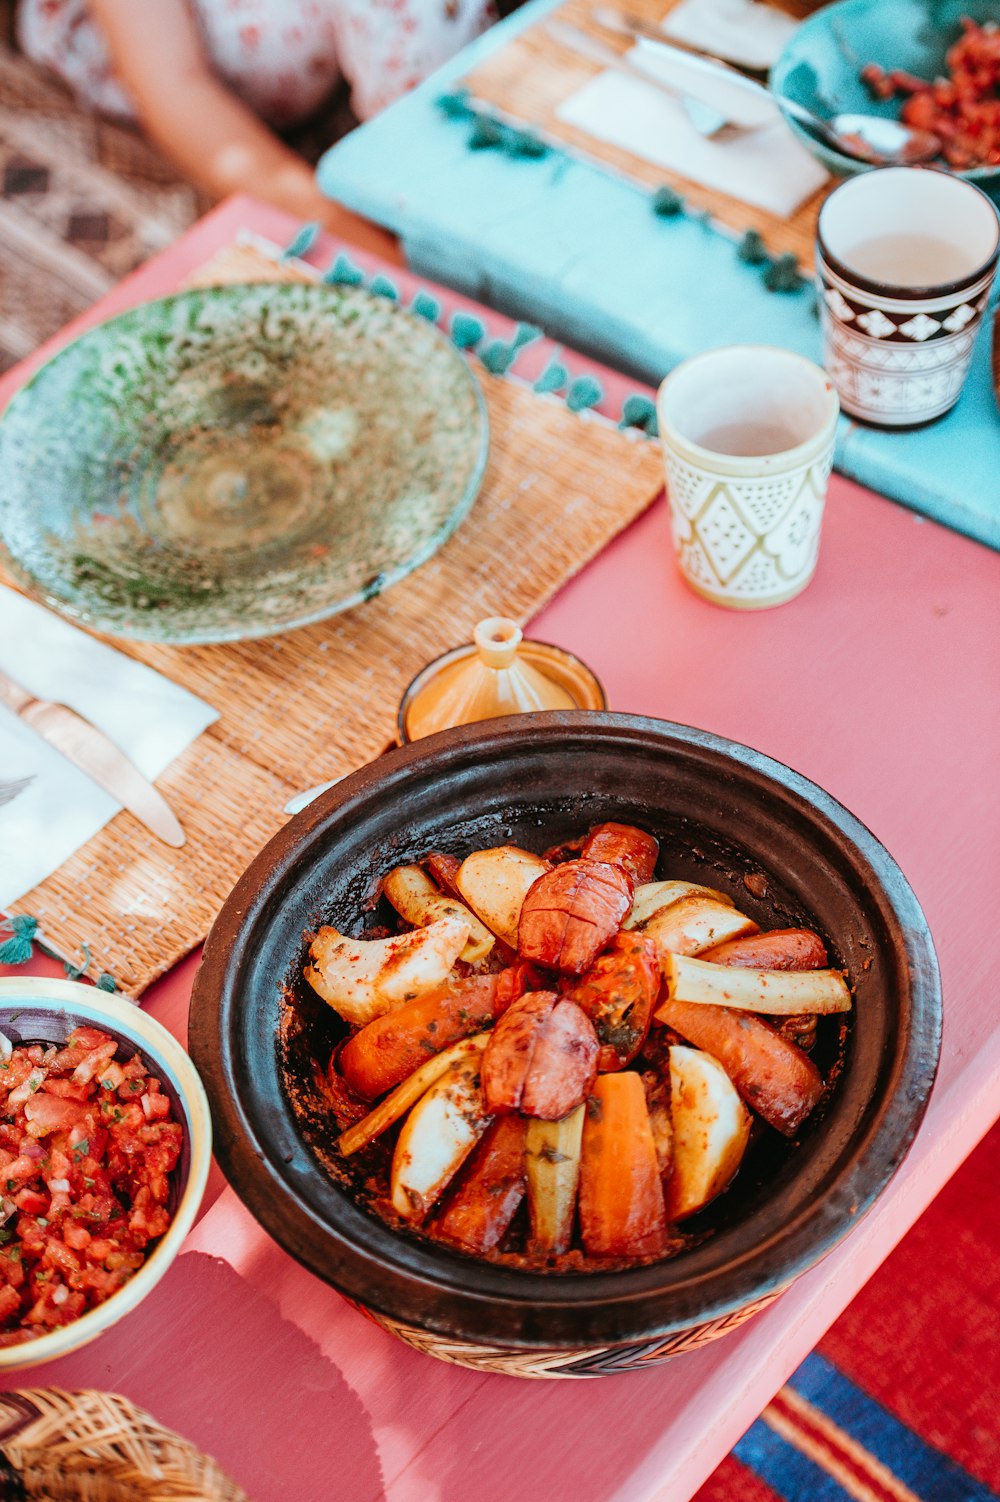 nourriture aromatisée sur le bol à côté de l’assiette sur le dessus de la table